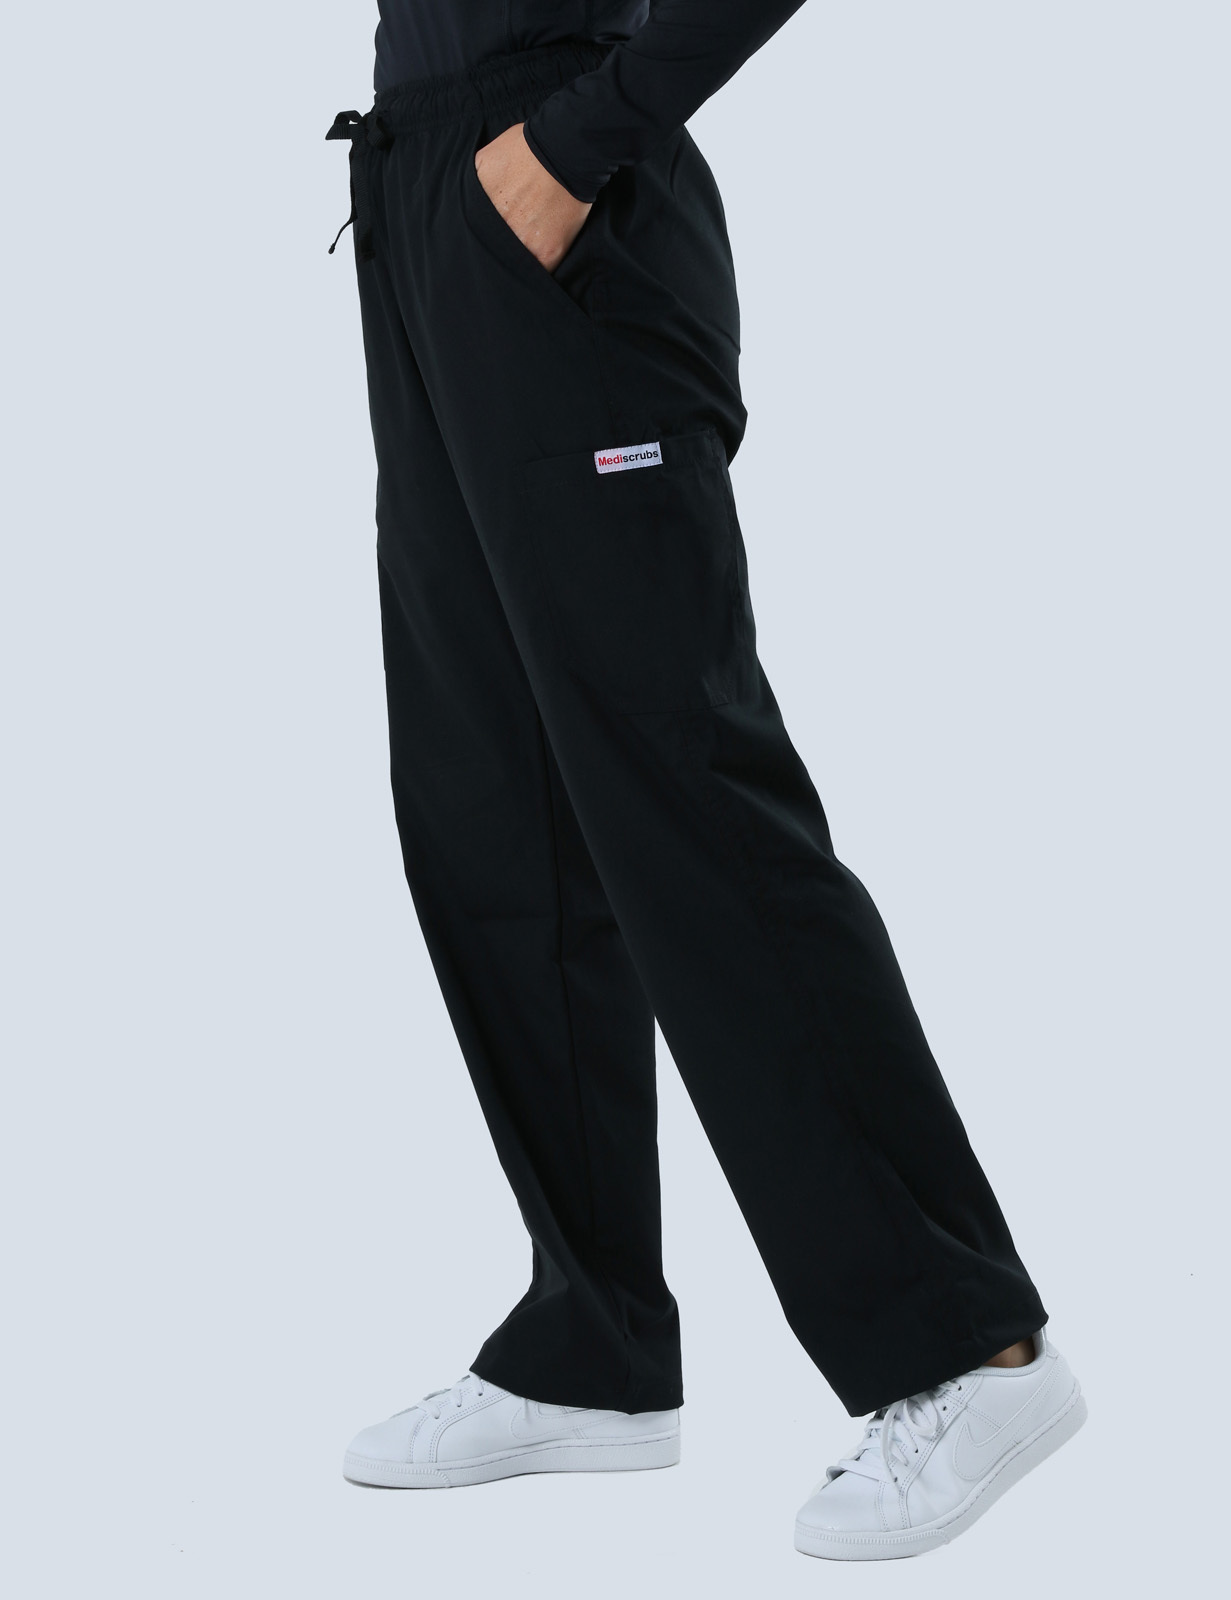 Canberra Hospital Medical Imaging Doctor  Uniform Set Bundle (4 Pocket Top and Cargo Pants in Black + Logos)